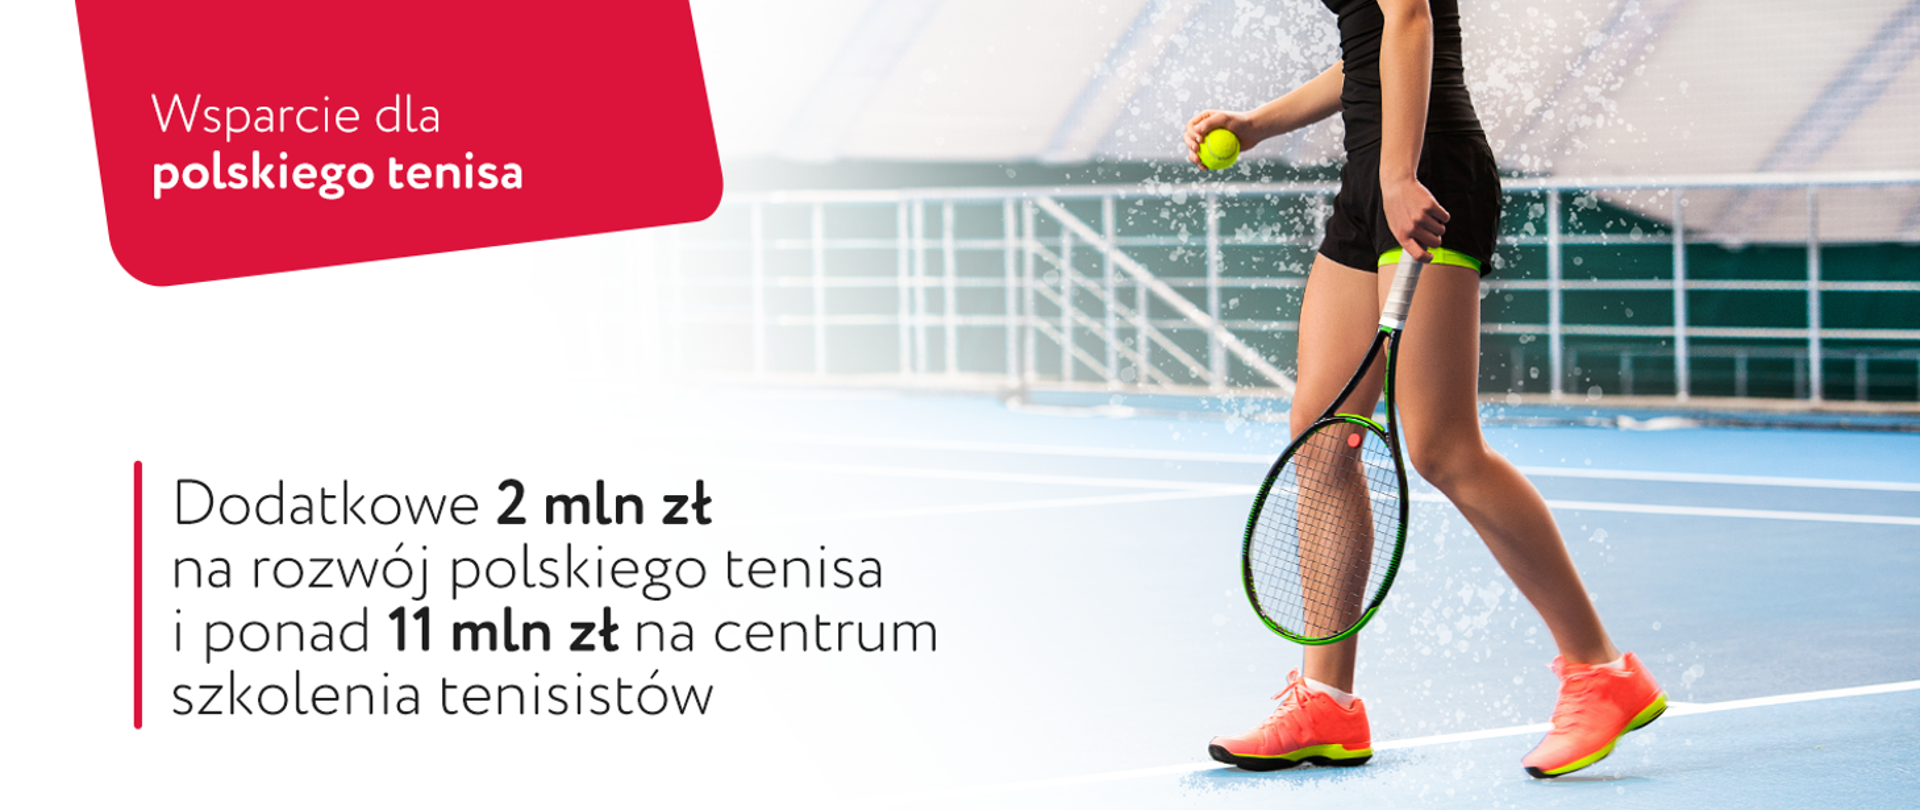 Dodatkowe 2 mln zł na rozwój polskiego tenisa i ponad 11 mln zł na centrum szkolenia tenisistów 